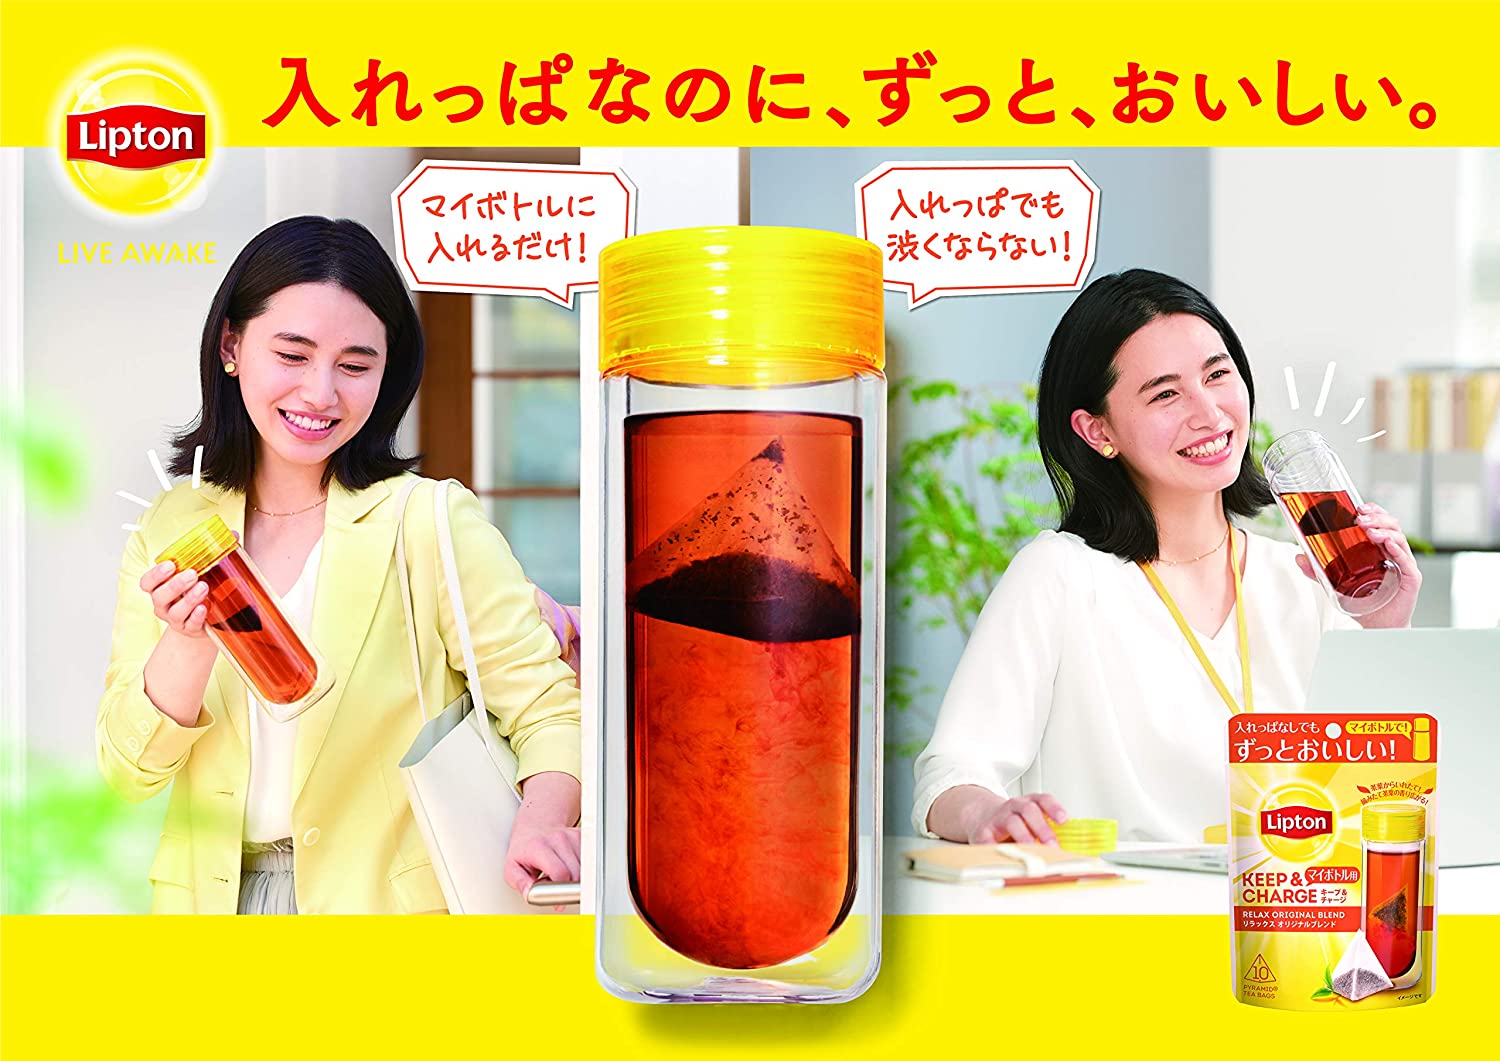 Lipton Keep and Charge Relaxing Original Blend Tea Bags 10P x 6 Bags - NihonMura